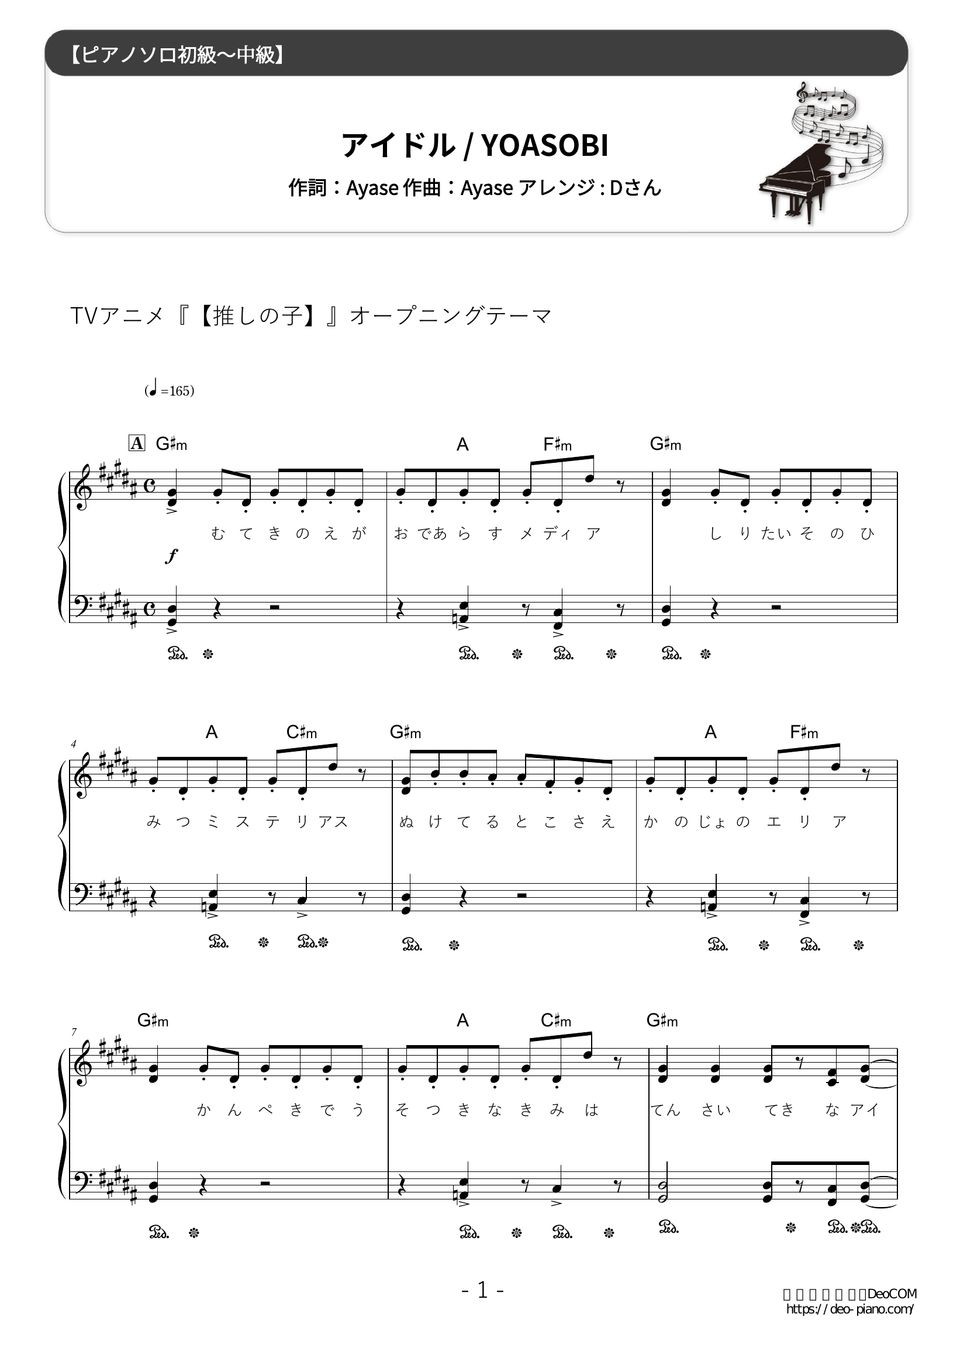 アイドル YOASOBI 楽譜 ピアノソロ 初心者